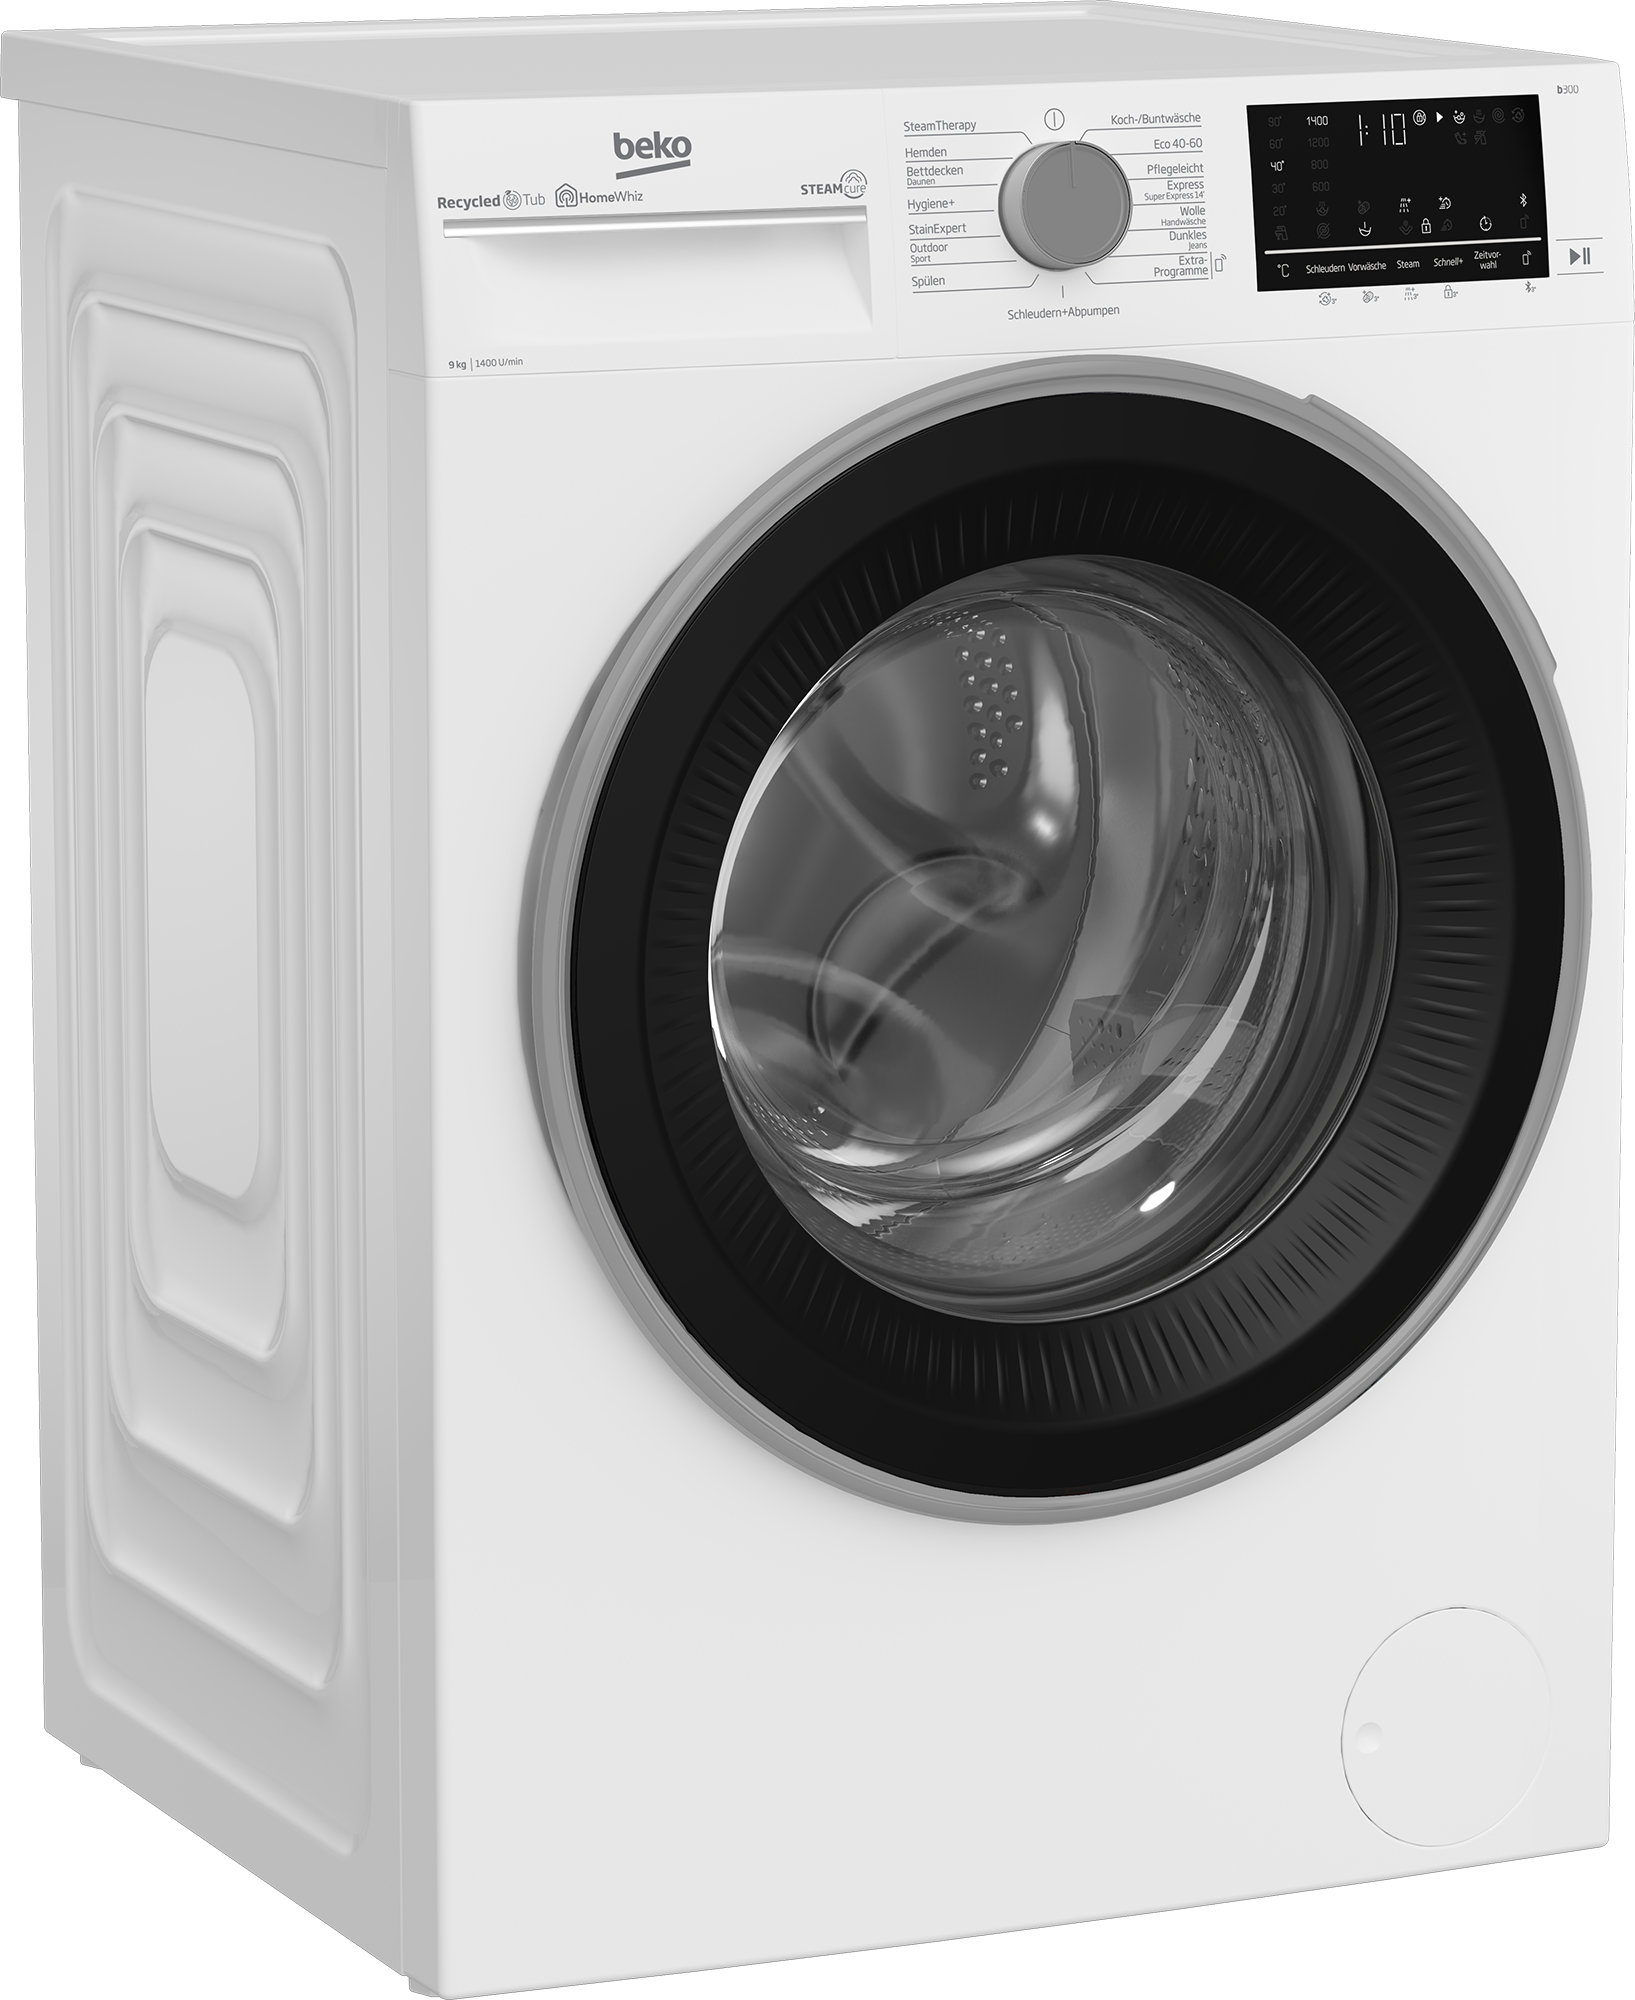 BEKO Waschmaschine, b300, B3WFU59415W2, allergenfrei SteamCure 99% U/min, online 9 kg, 1400 - kaufen